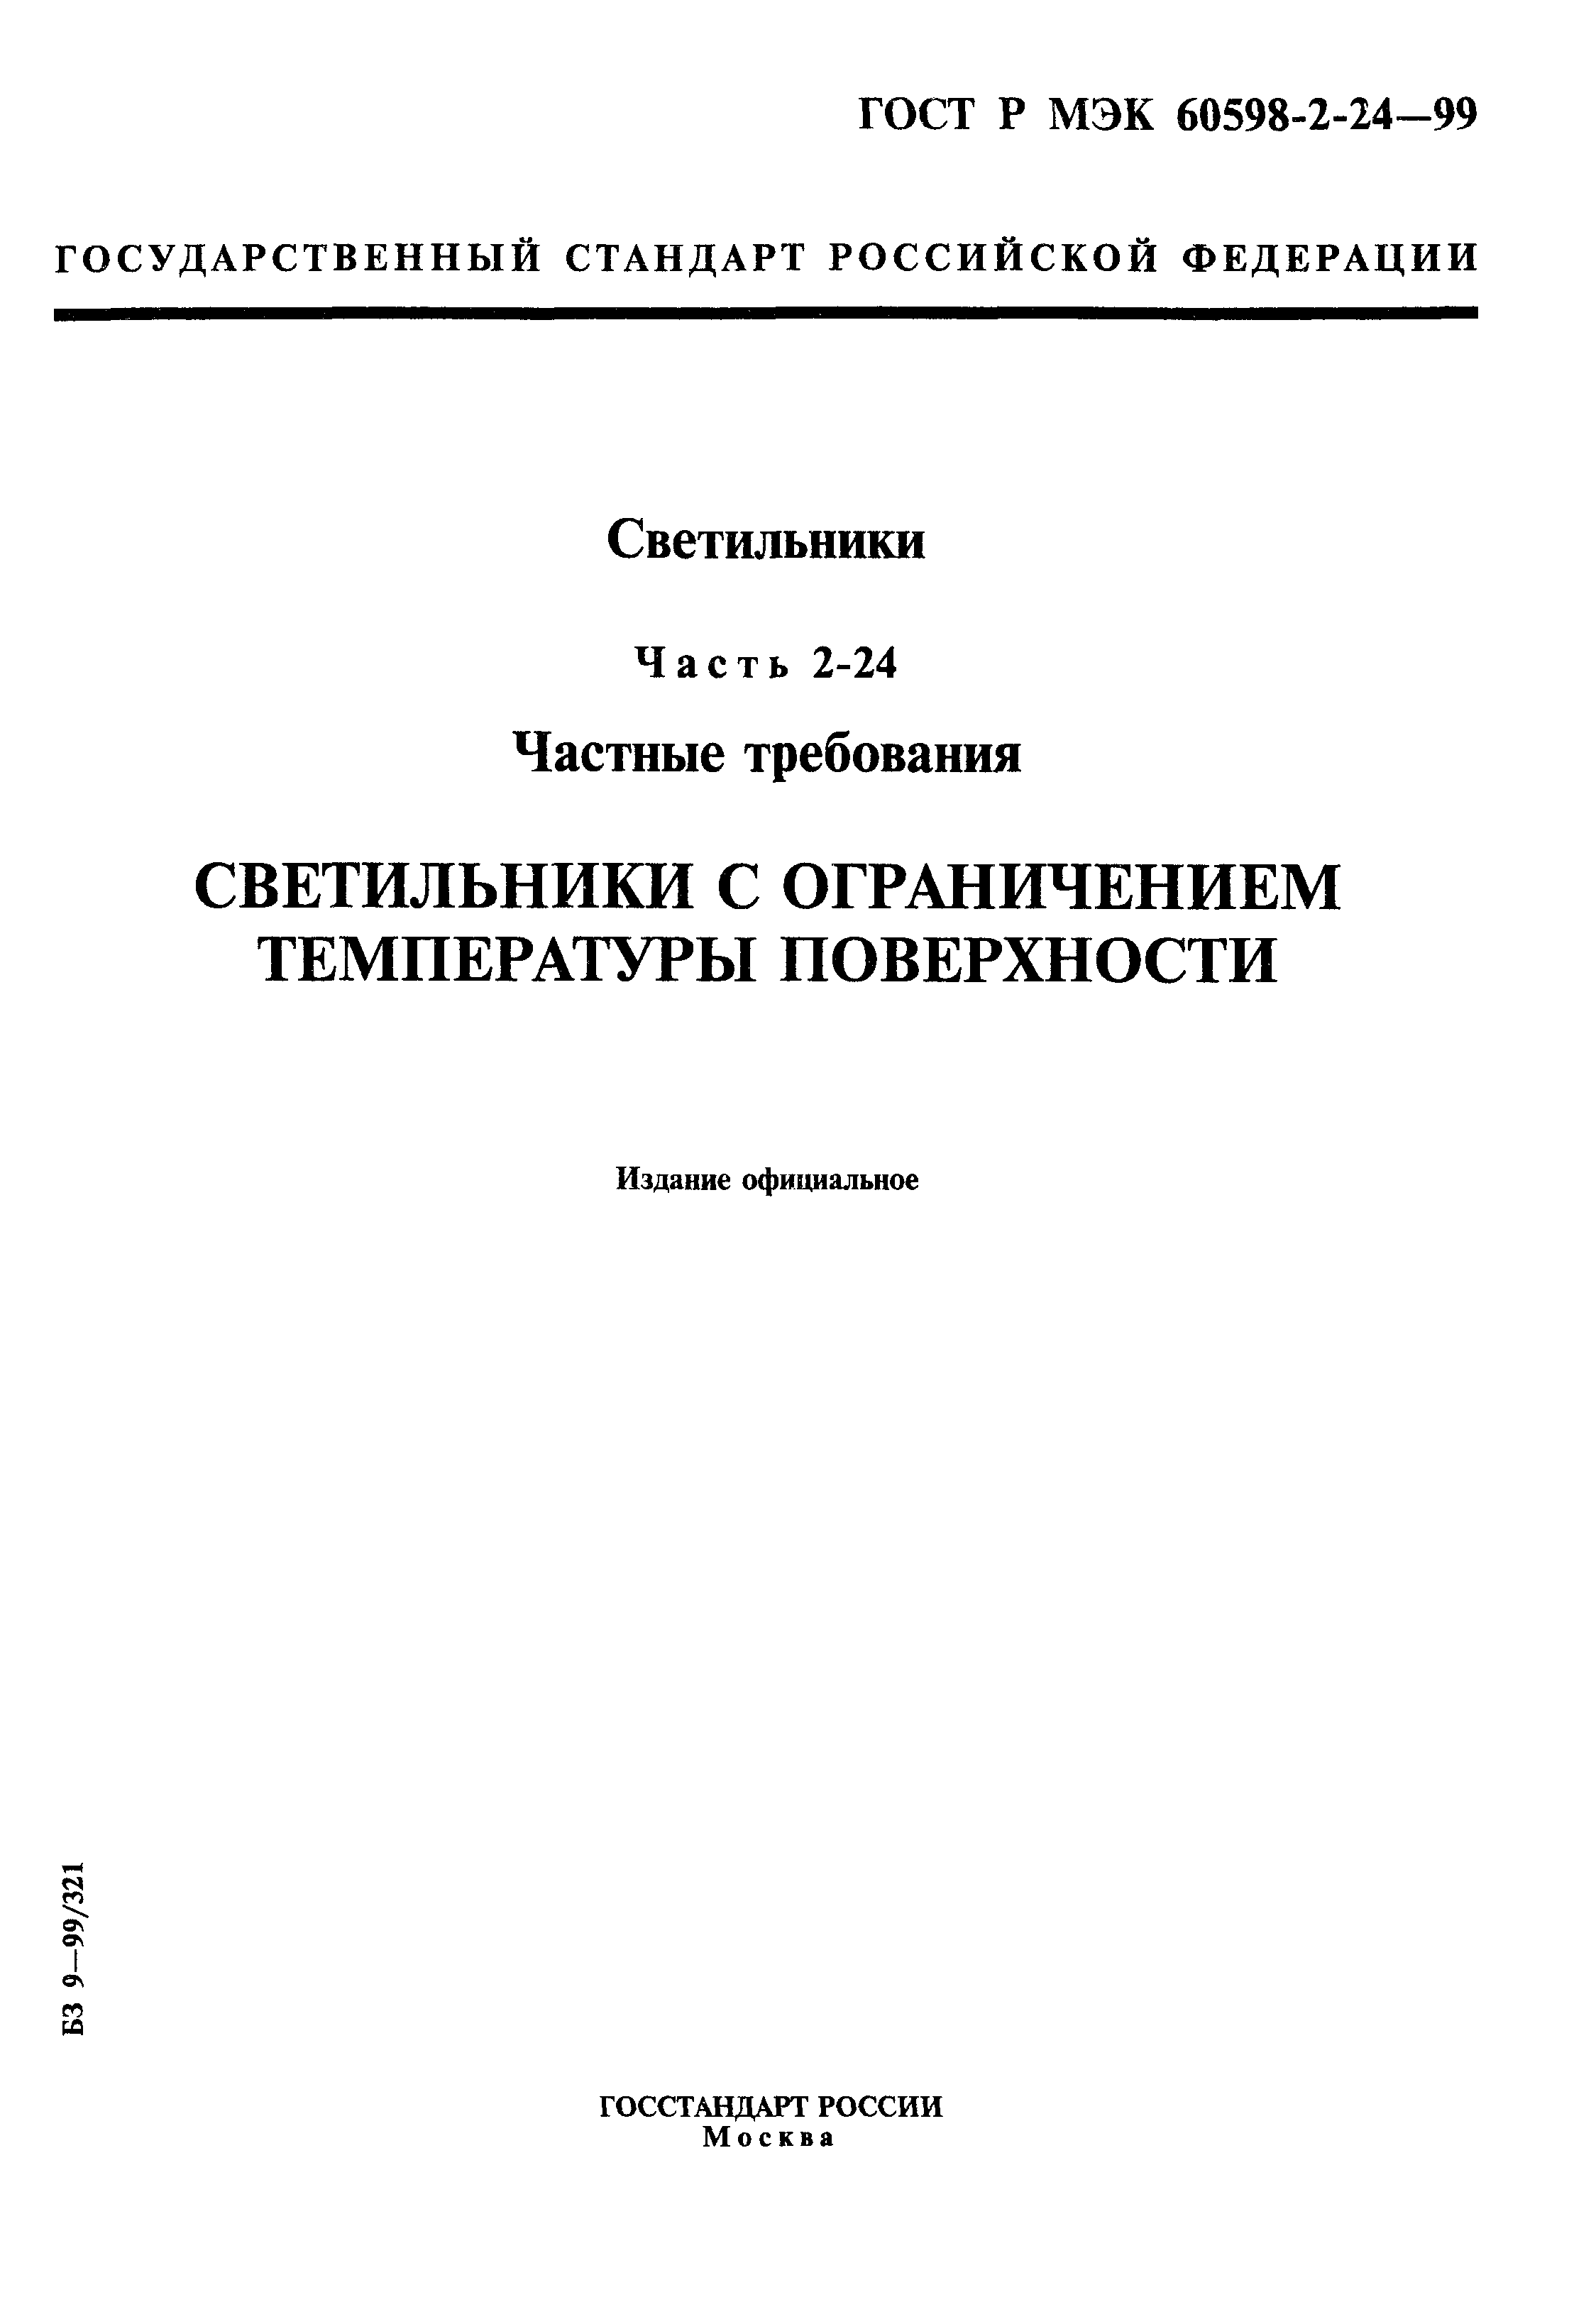 ГОСТ Р МЭК 60598-2-24-99